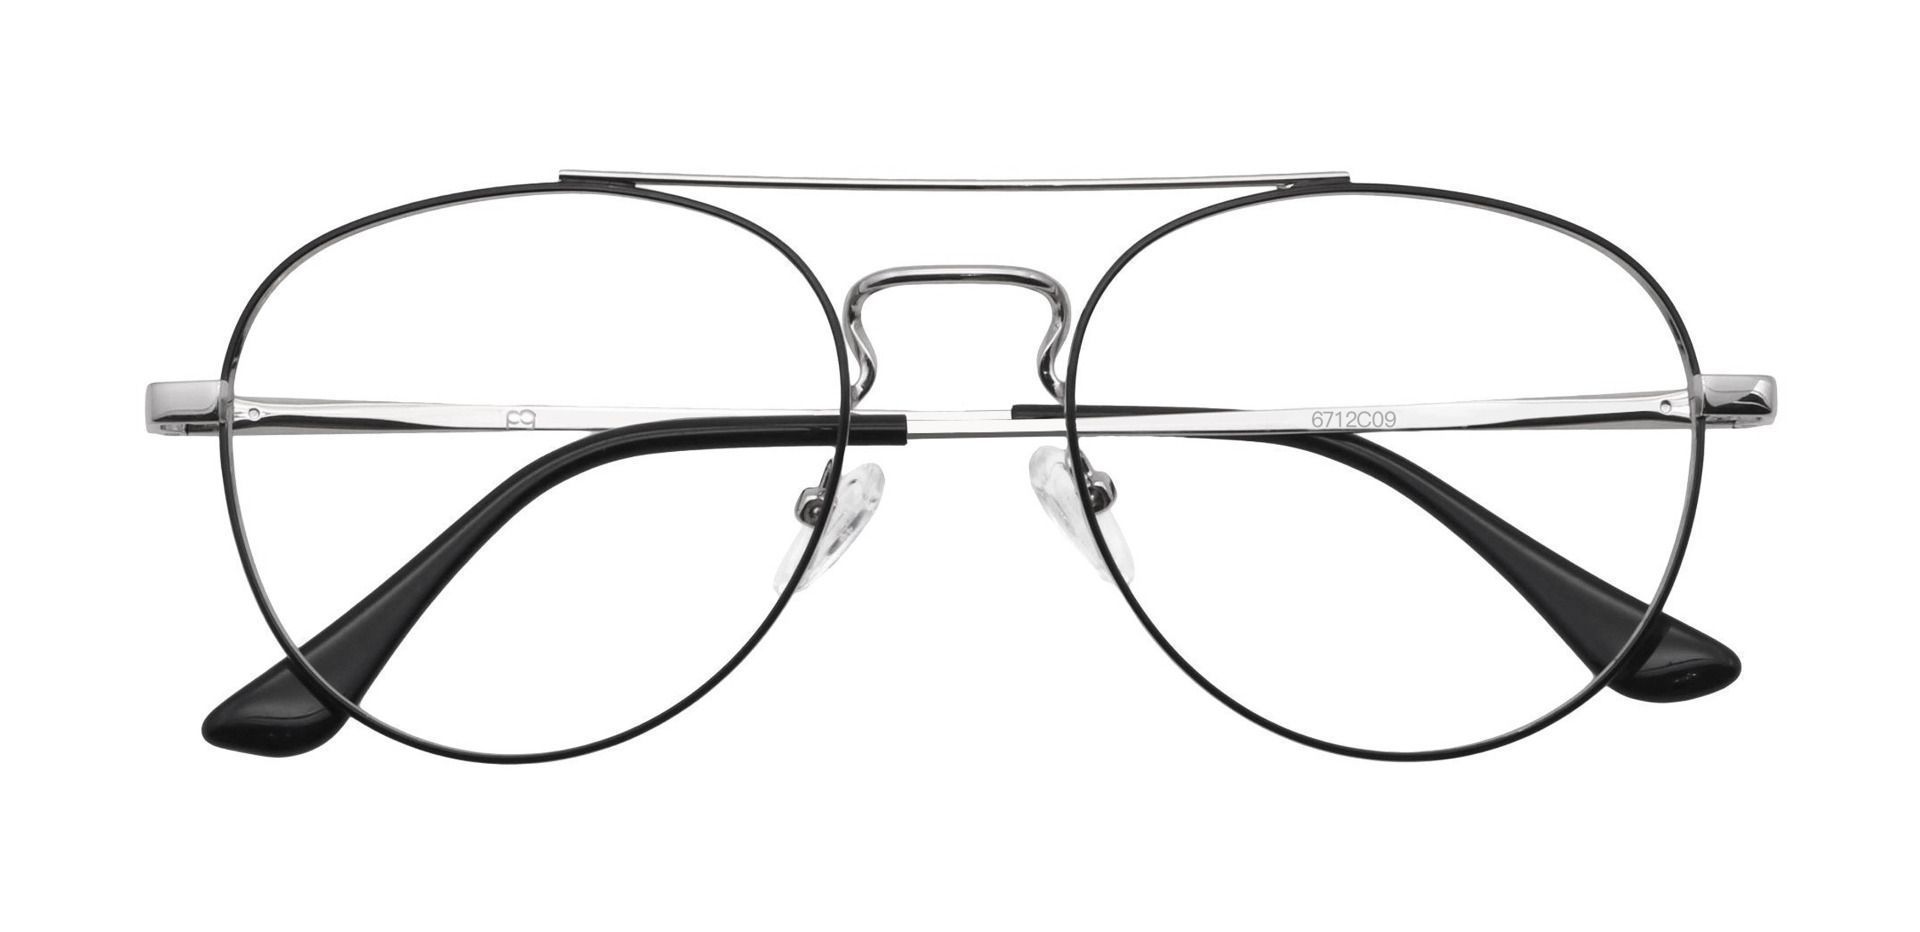 Trapp Aviator Non-Rx Glasses - Gray